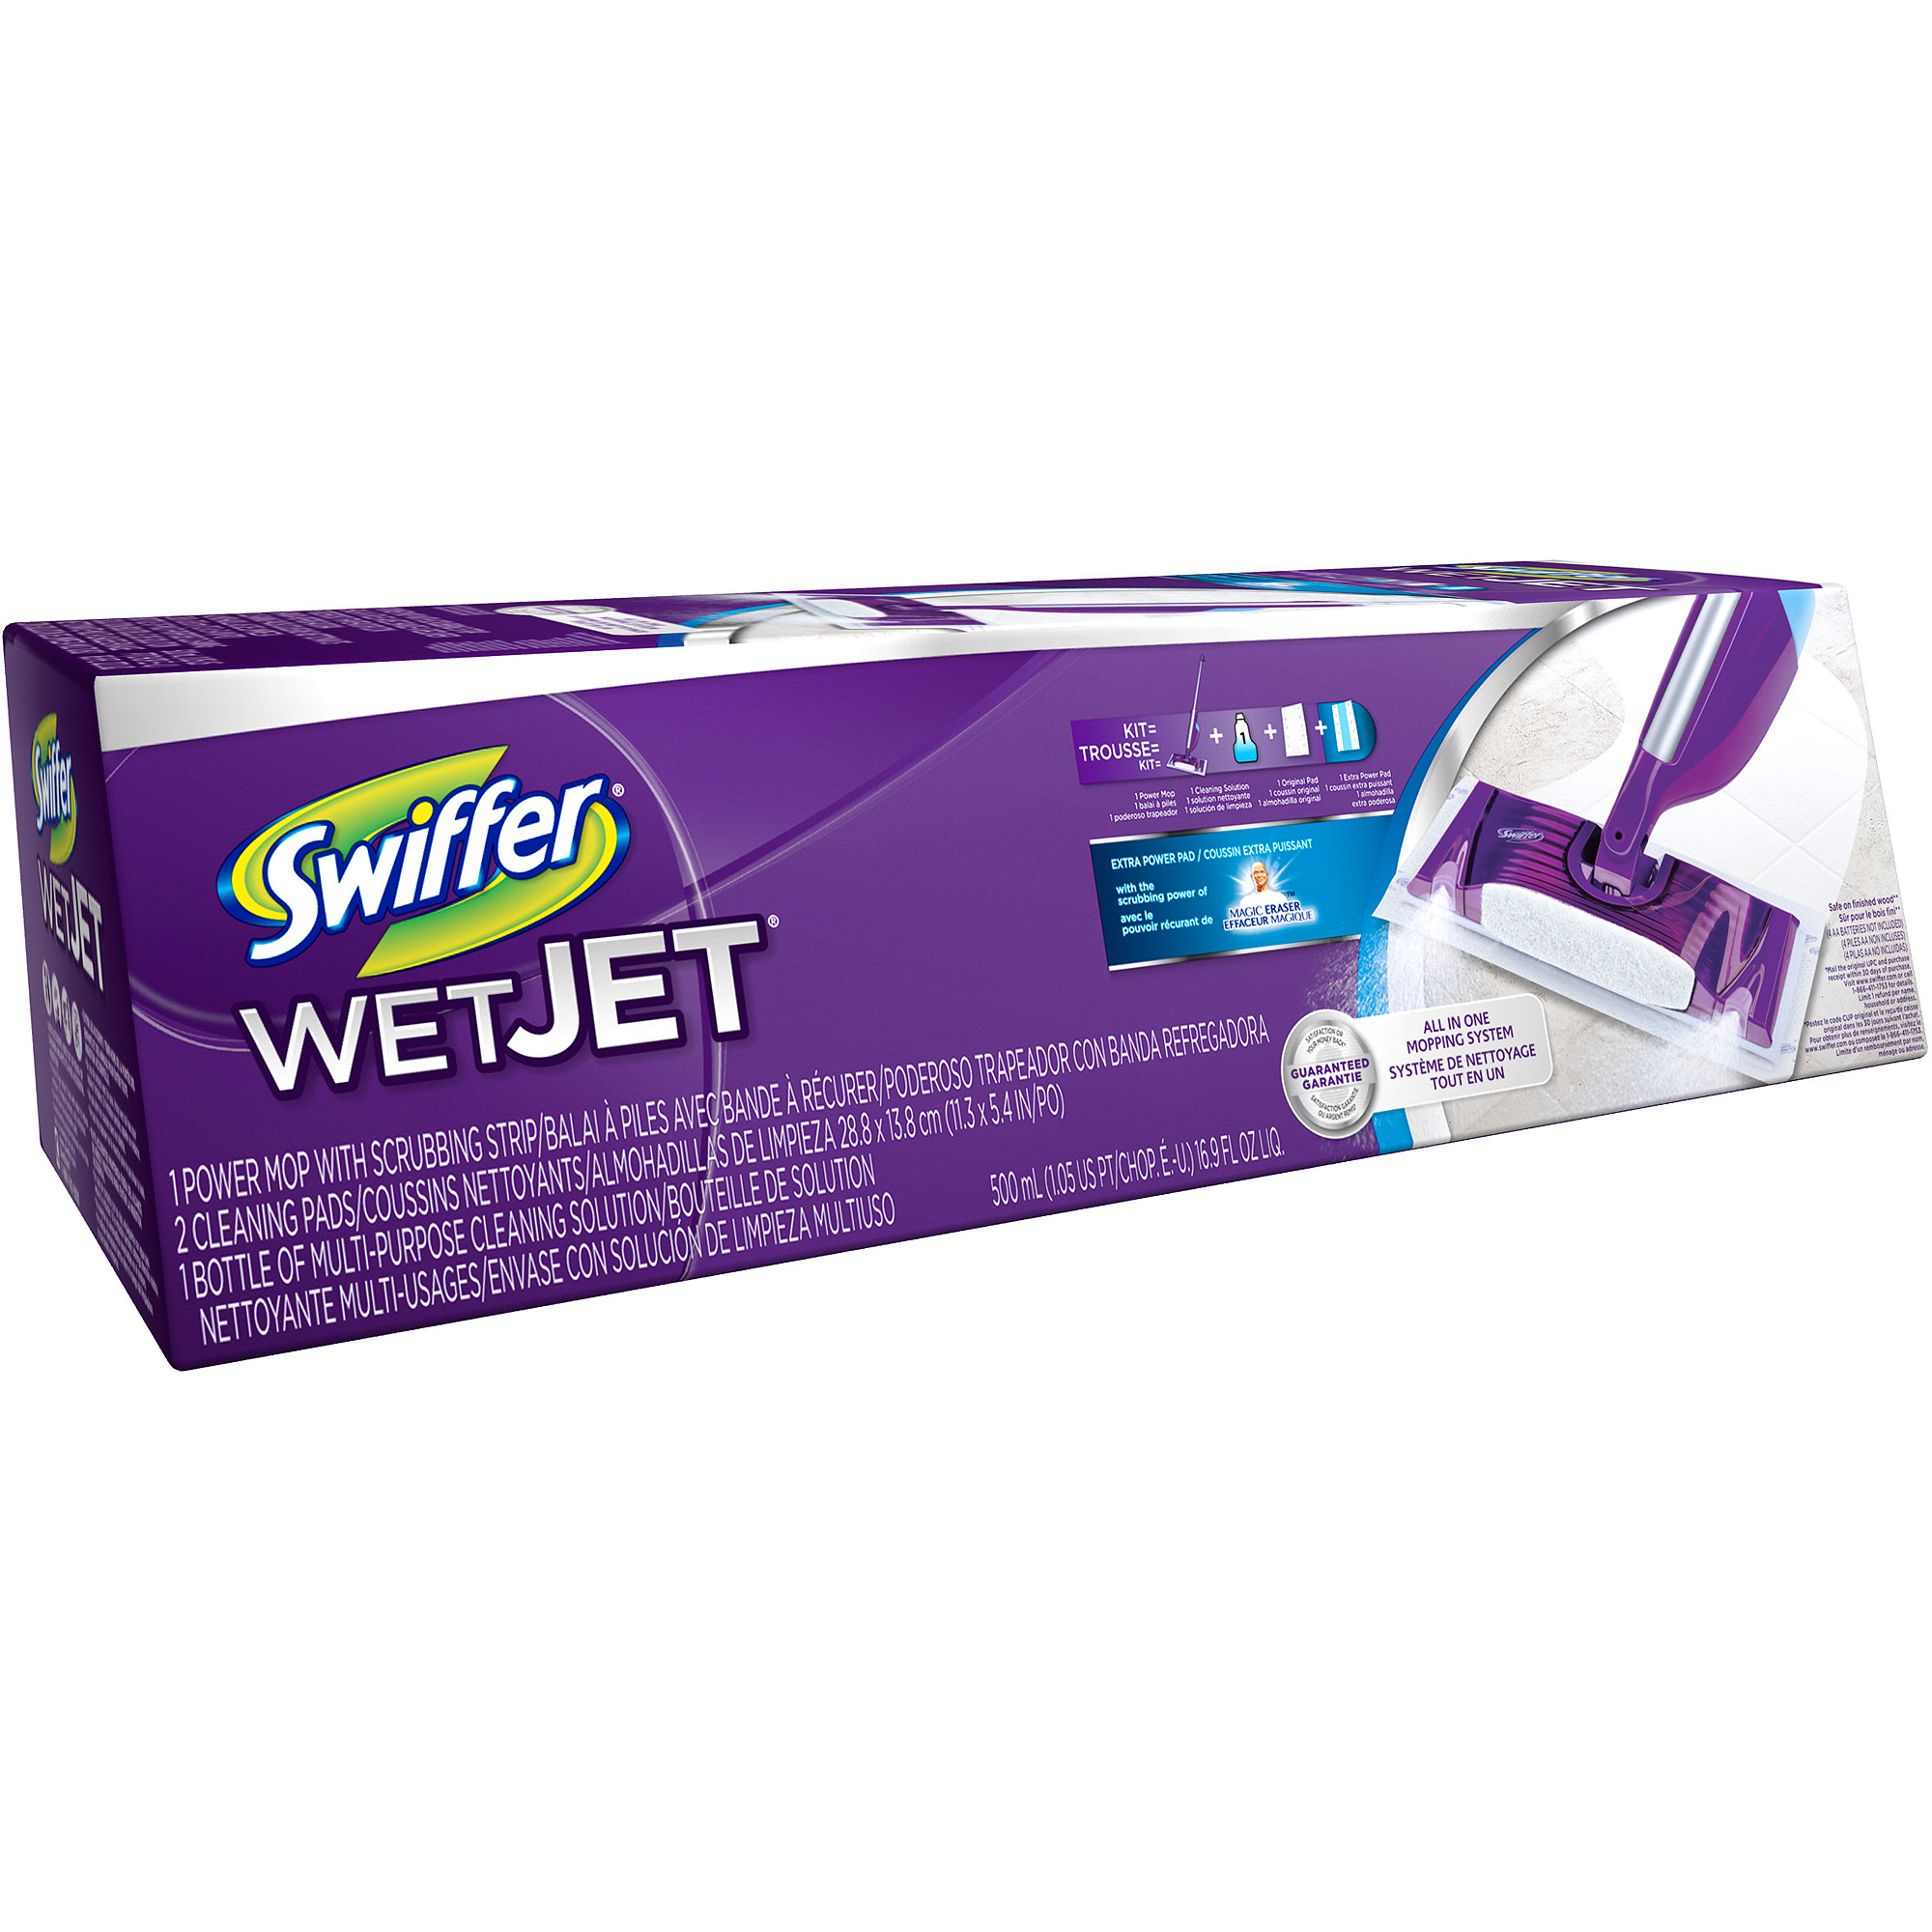 Wet Jet Cleaner Kit - image 4 of 11